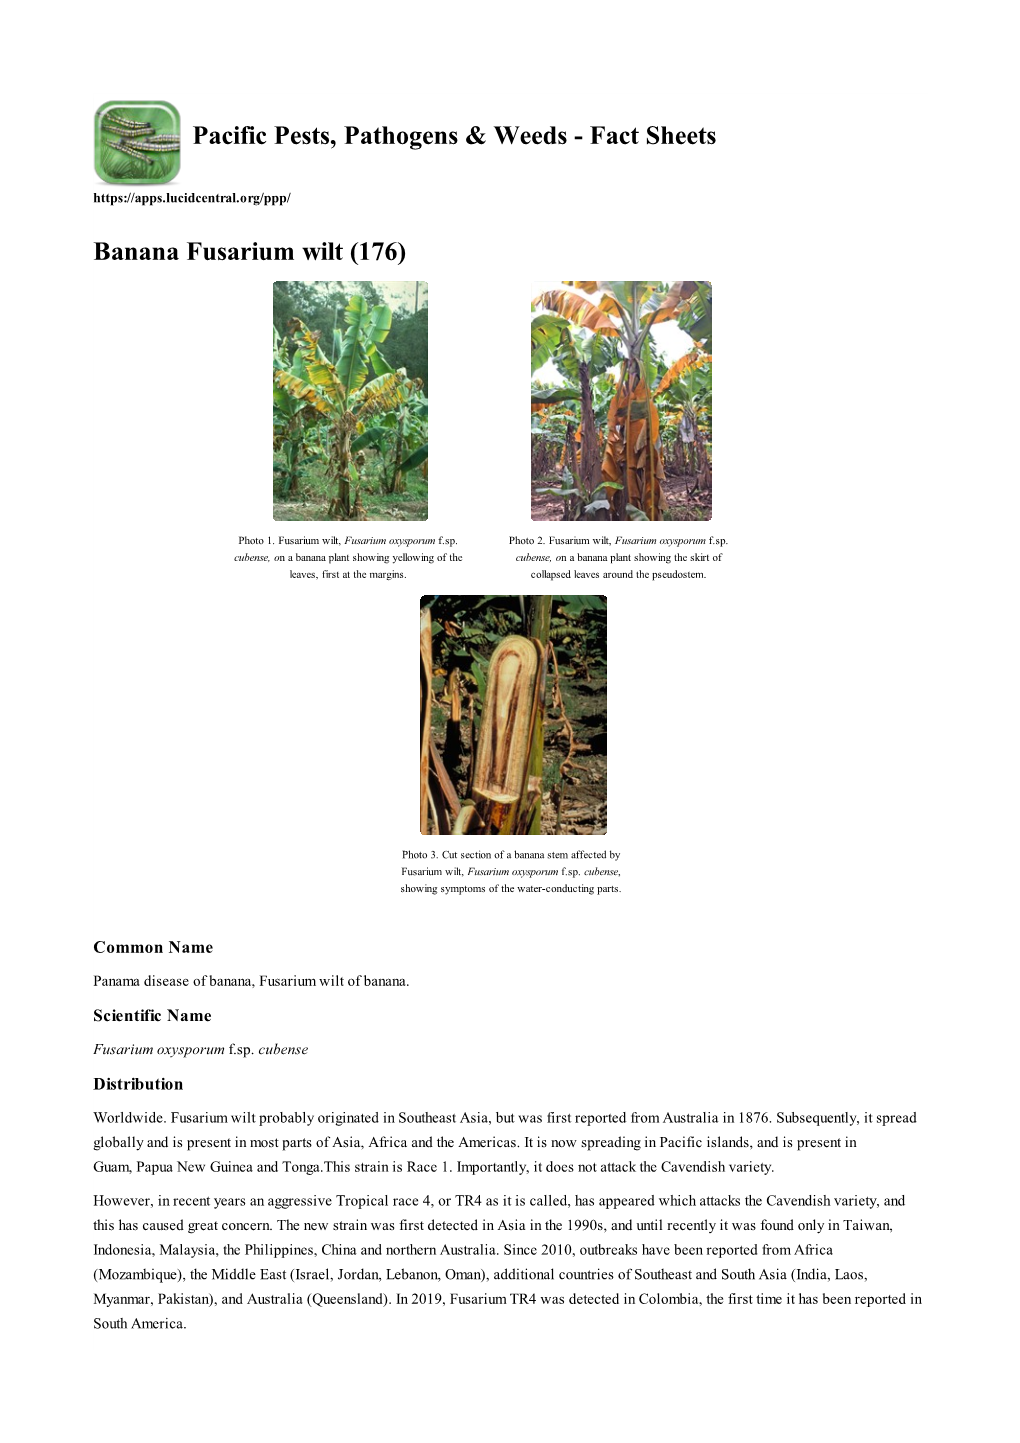 Banana Fusarium Wilt (176)